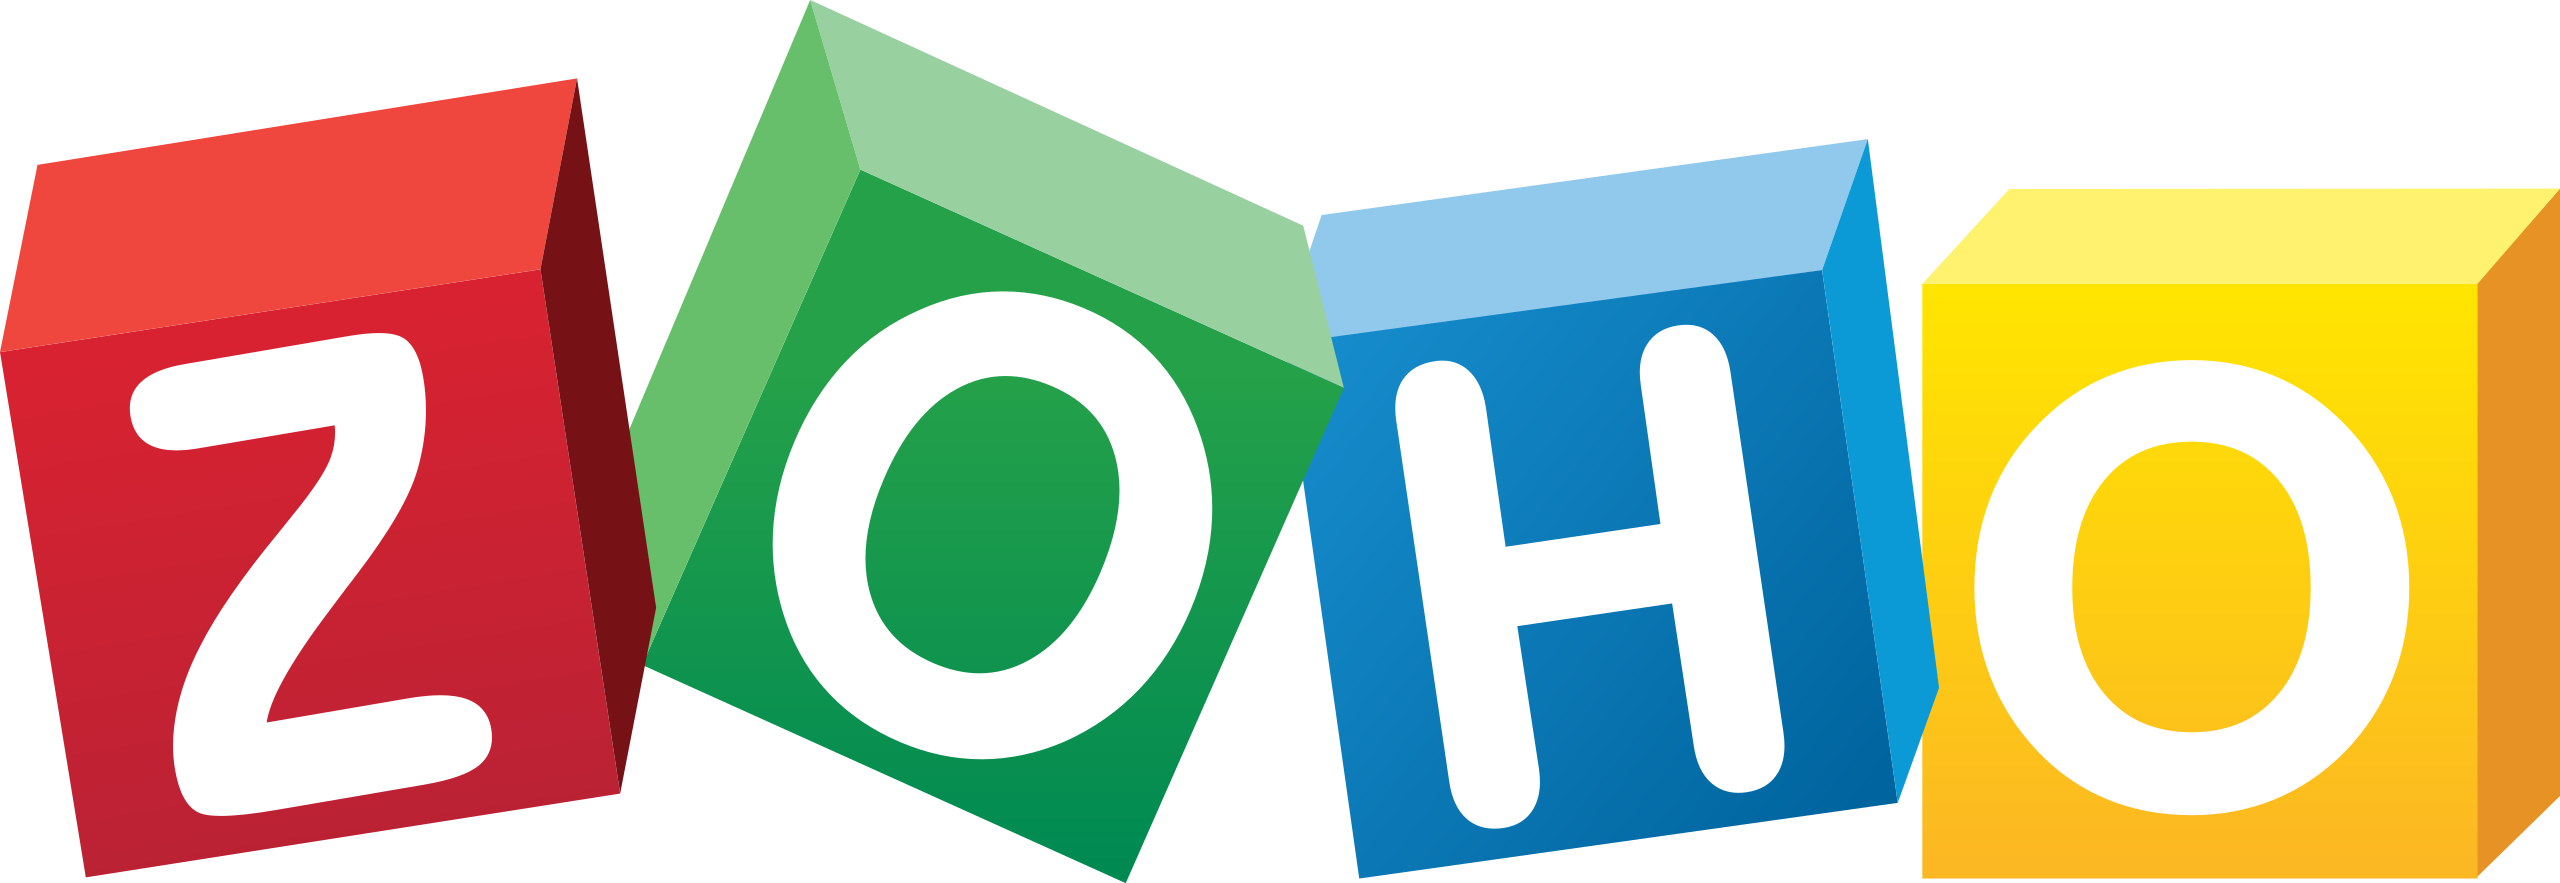 Phần mềm quản lý nhân sự (HRM) Zoho